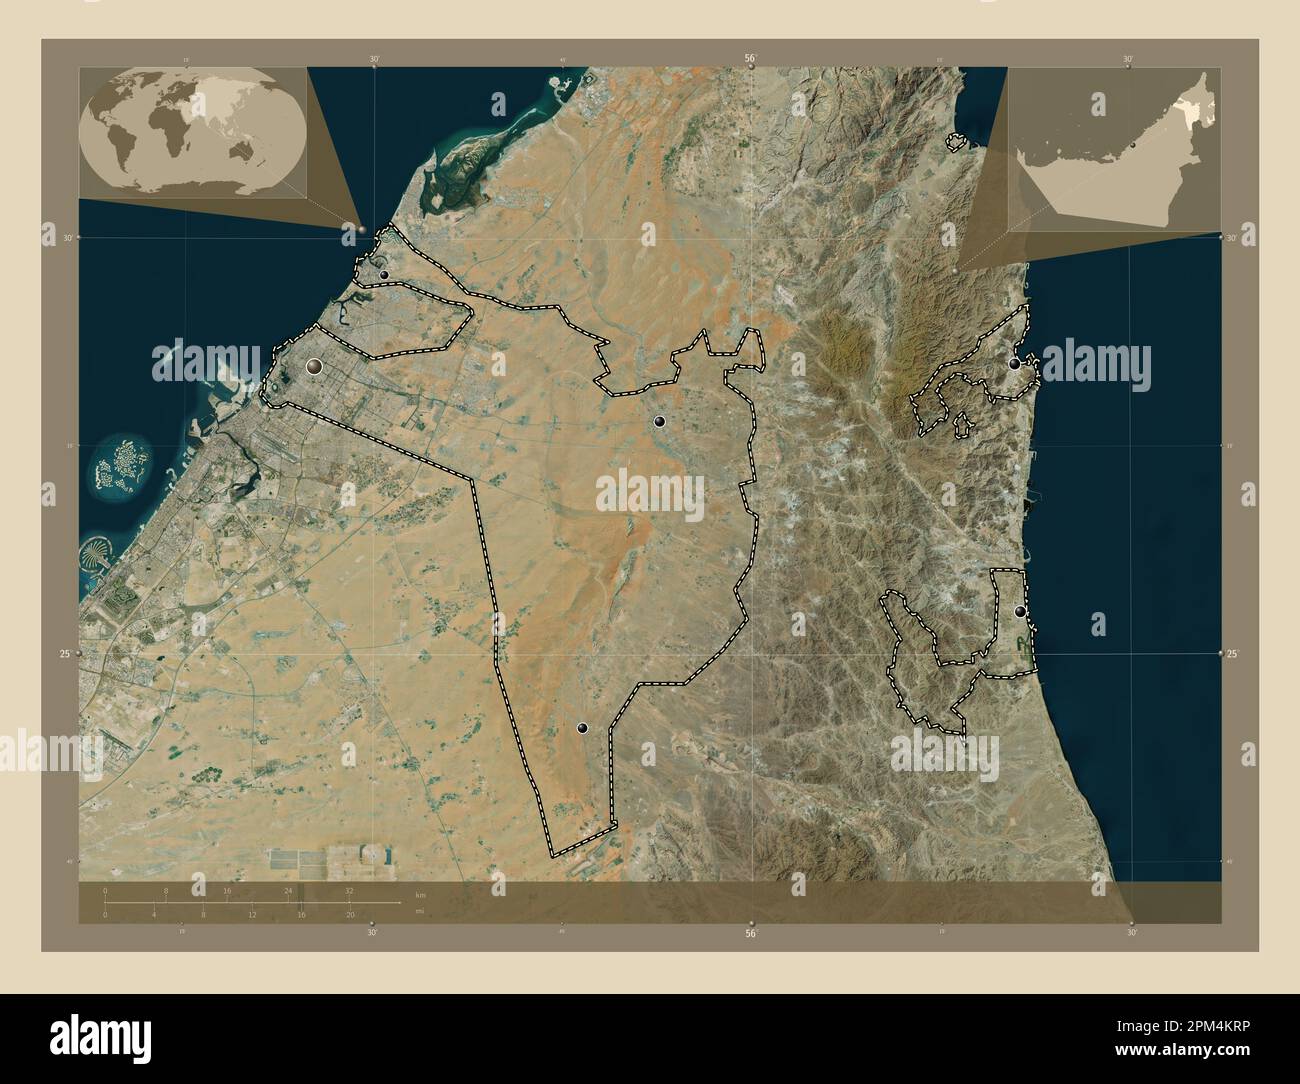 Sharjah, emirato degli Emirati Arabi Uniti. Mappa satellitare ad alta risoluzione. Posizioni delle principali città della regione. Mappe delle posizioni ausiliarie degli angoli Foto Stock